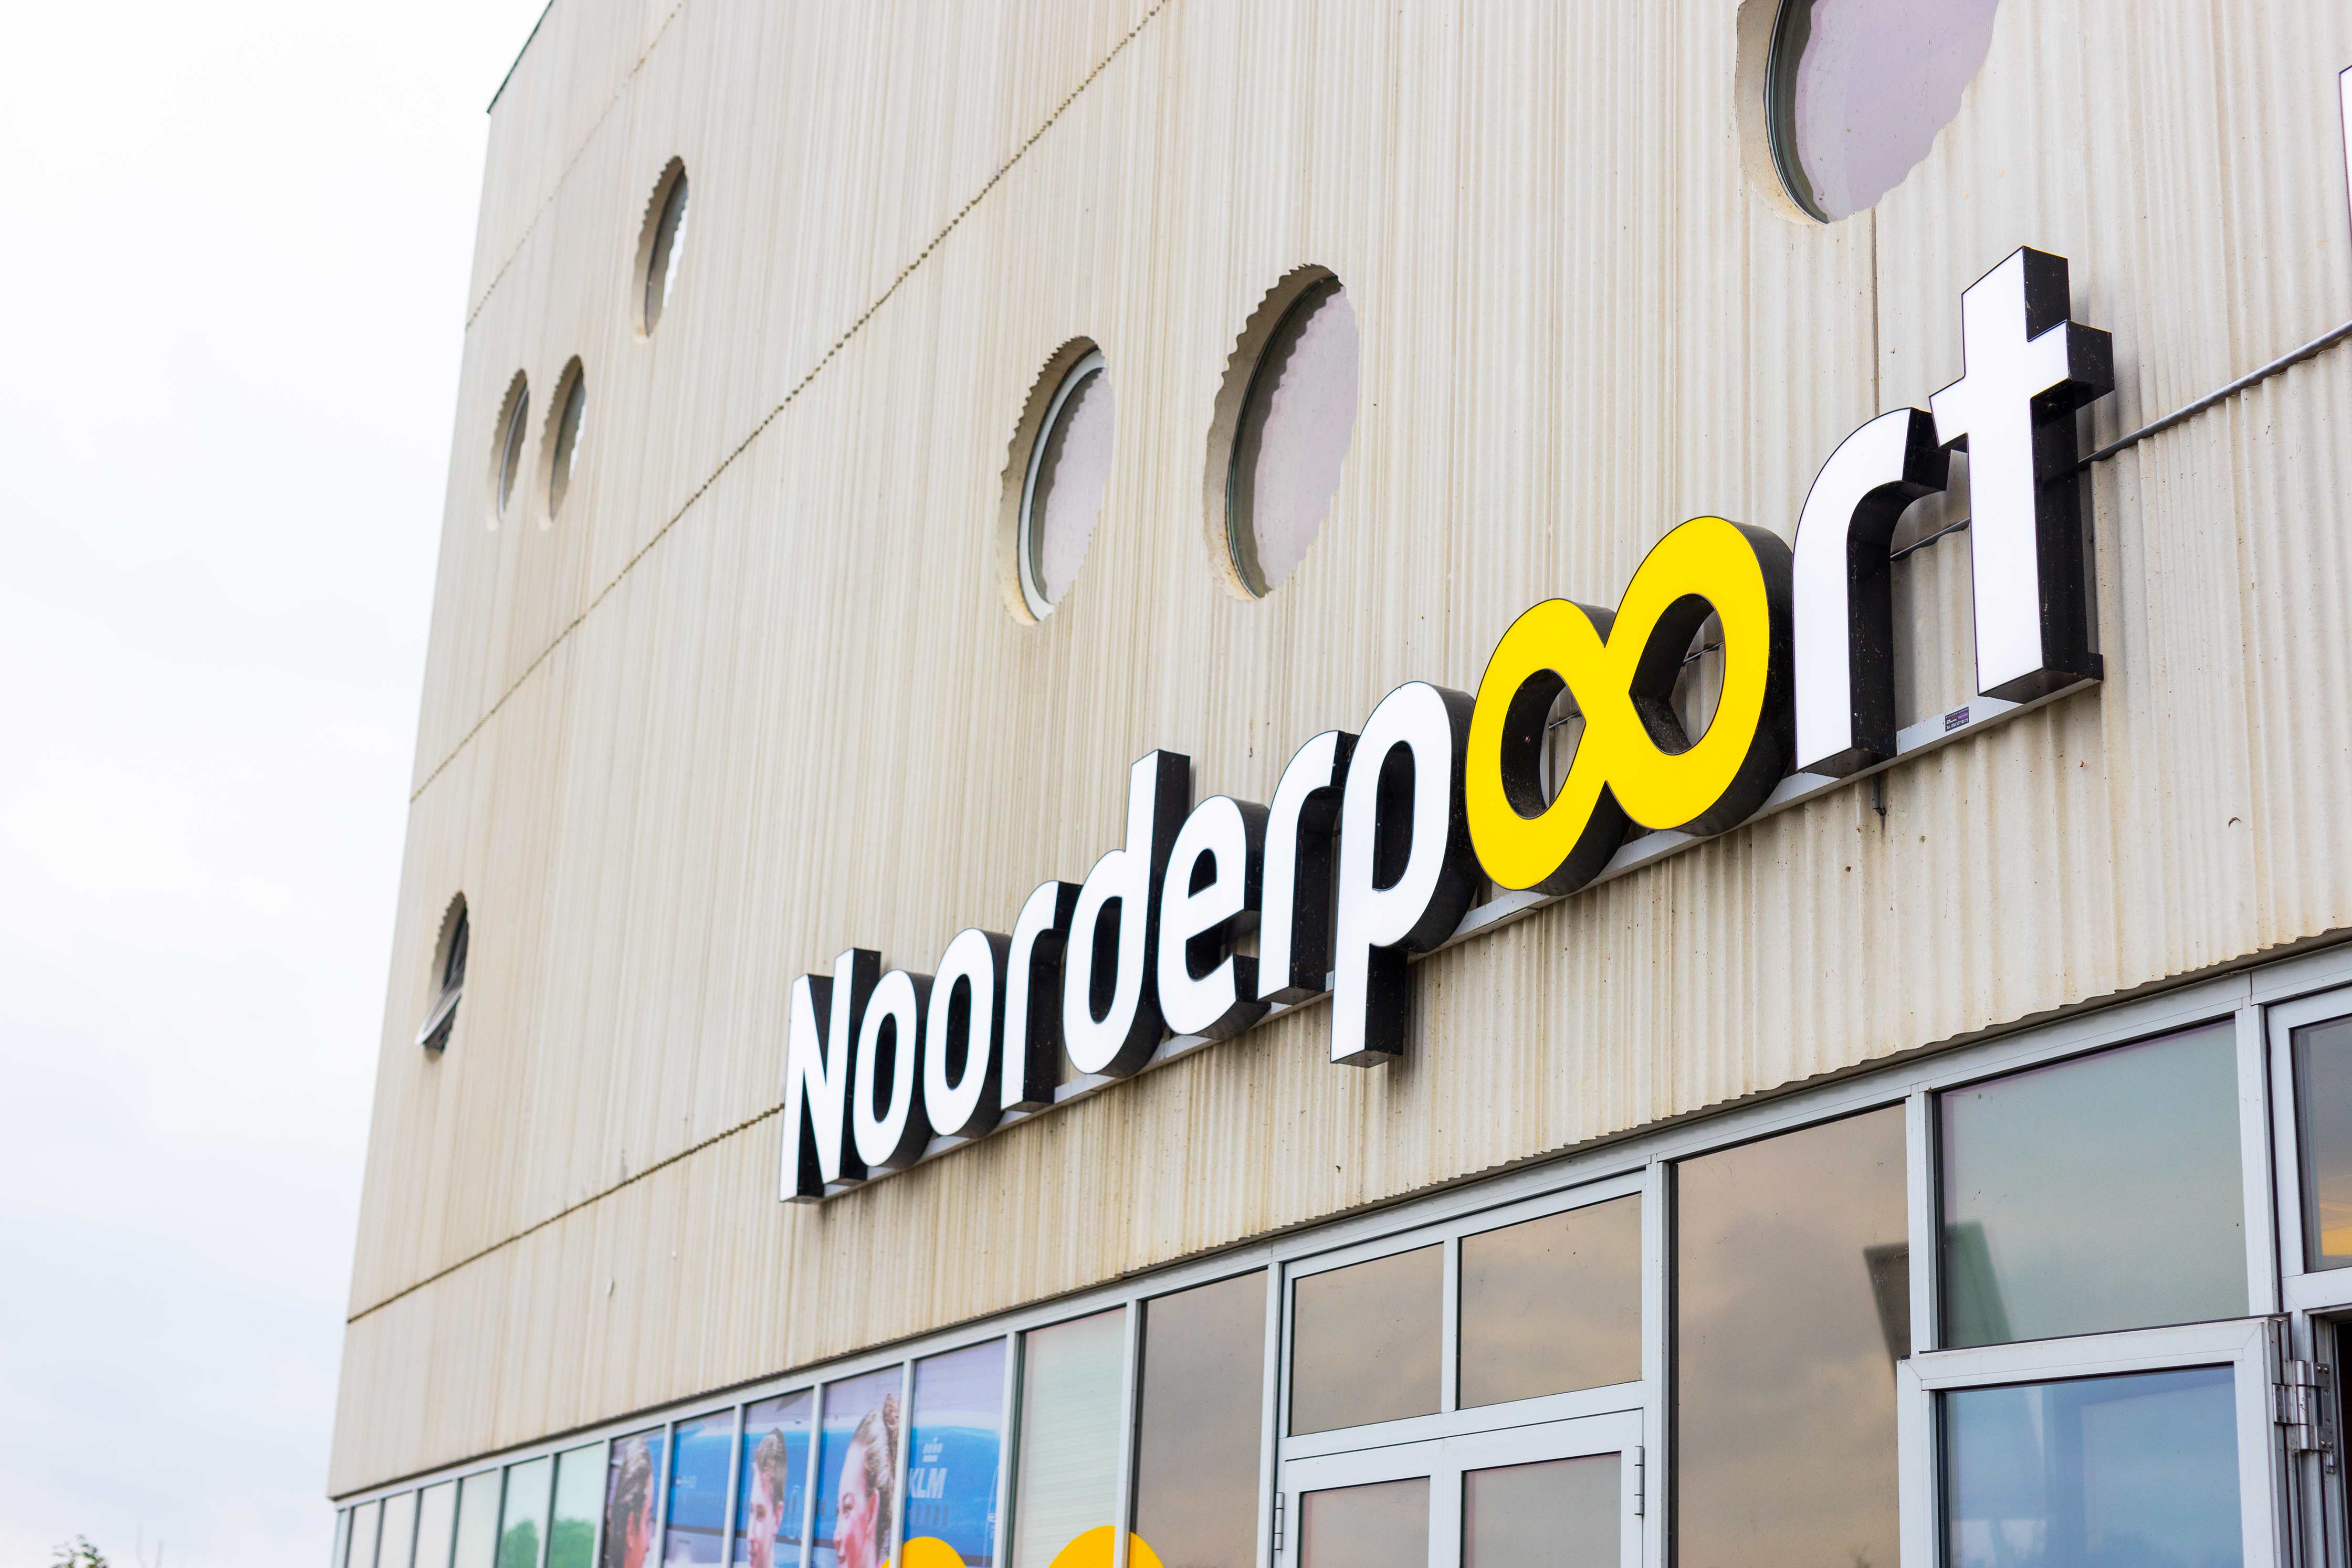 Logo Noorderpoort